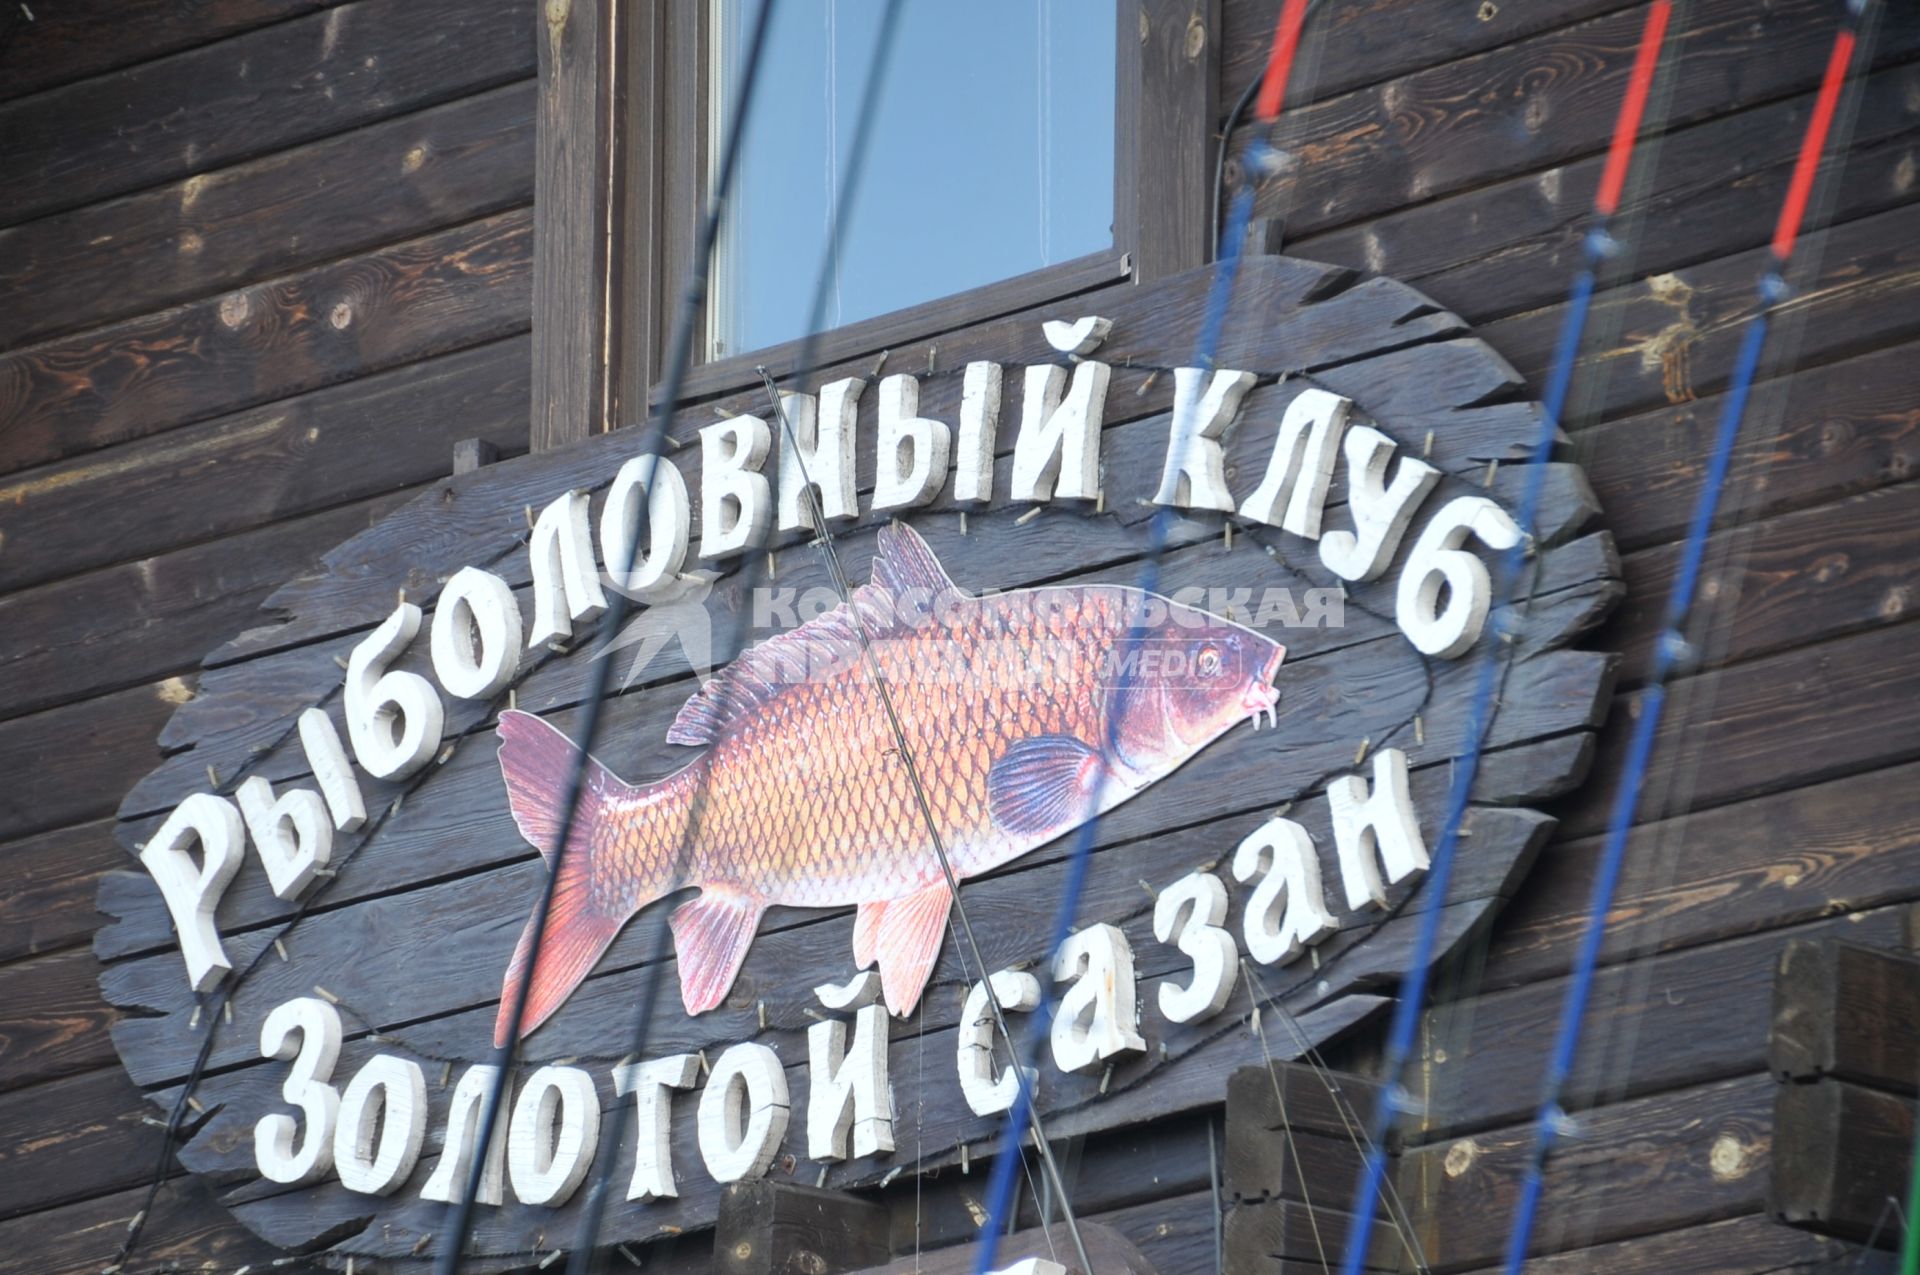 Рыболовный клуб Золотой сазан. 04 июля 2011 года.